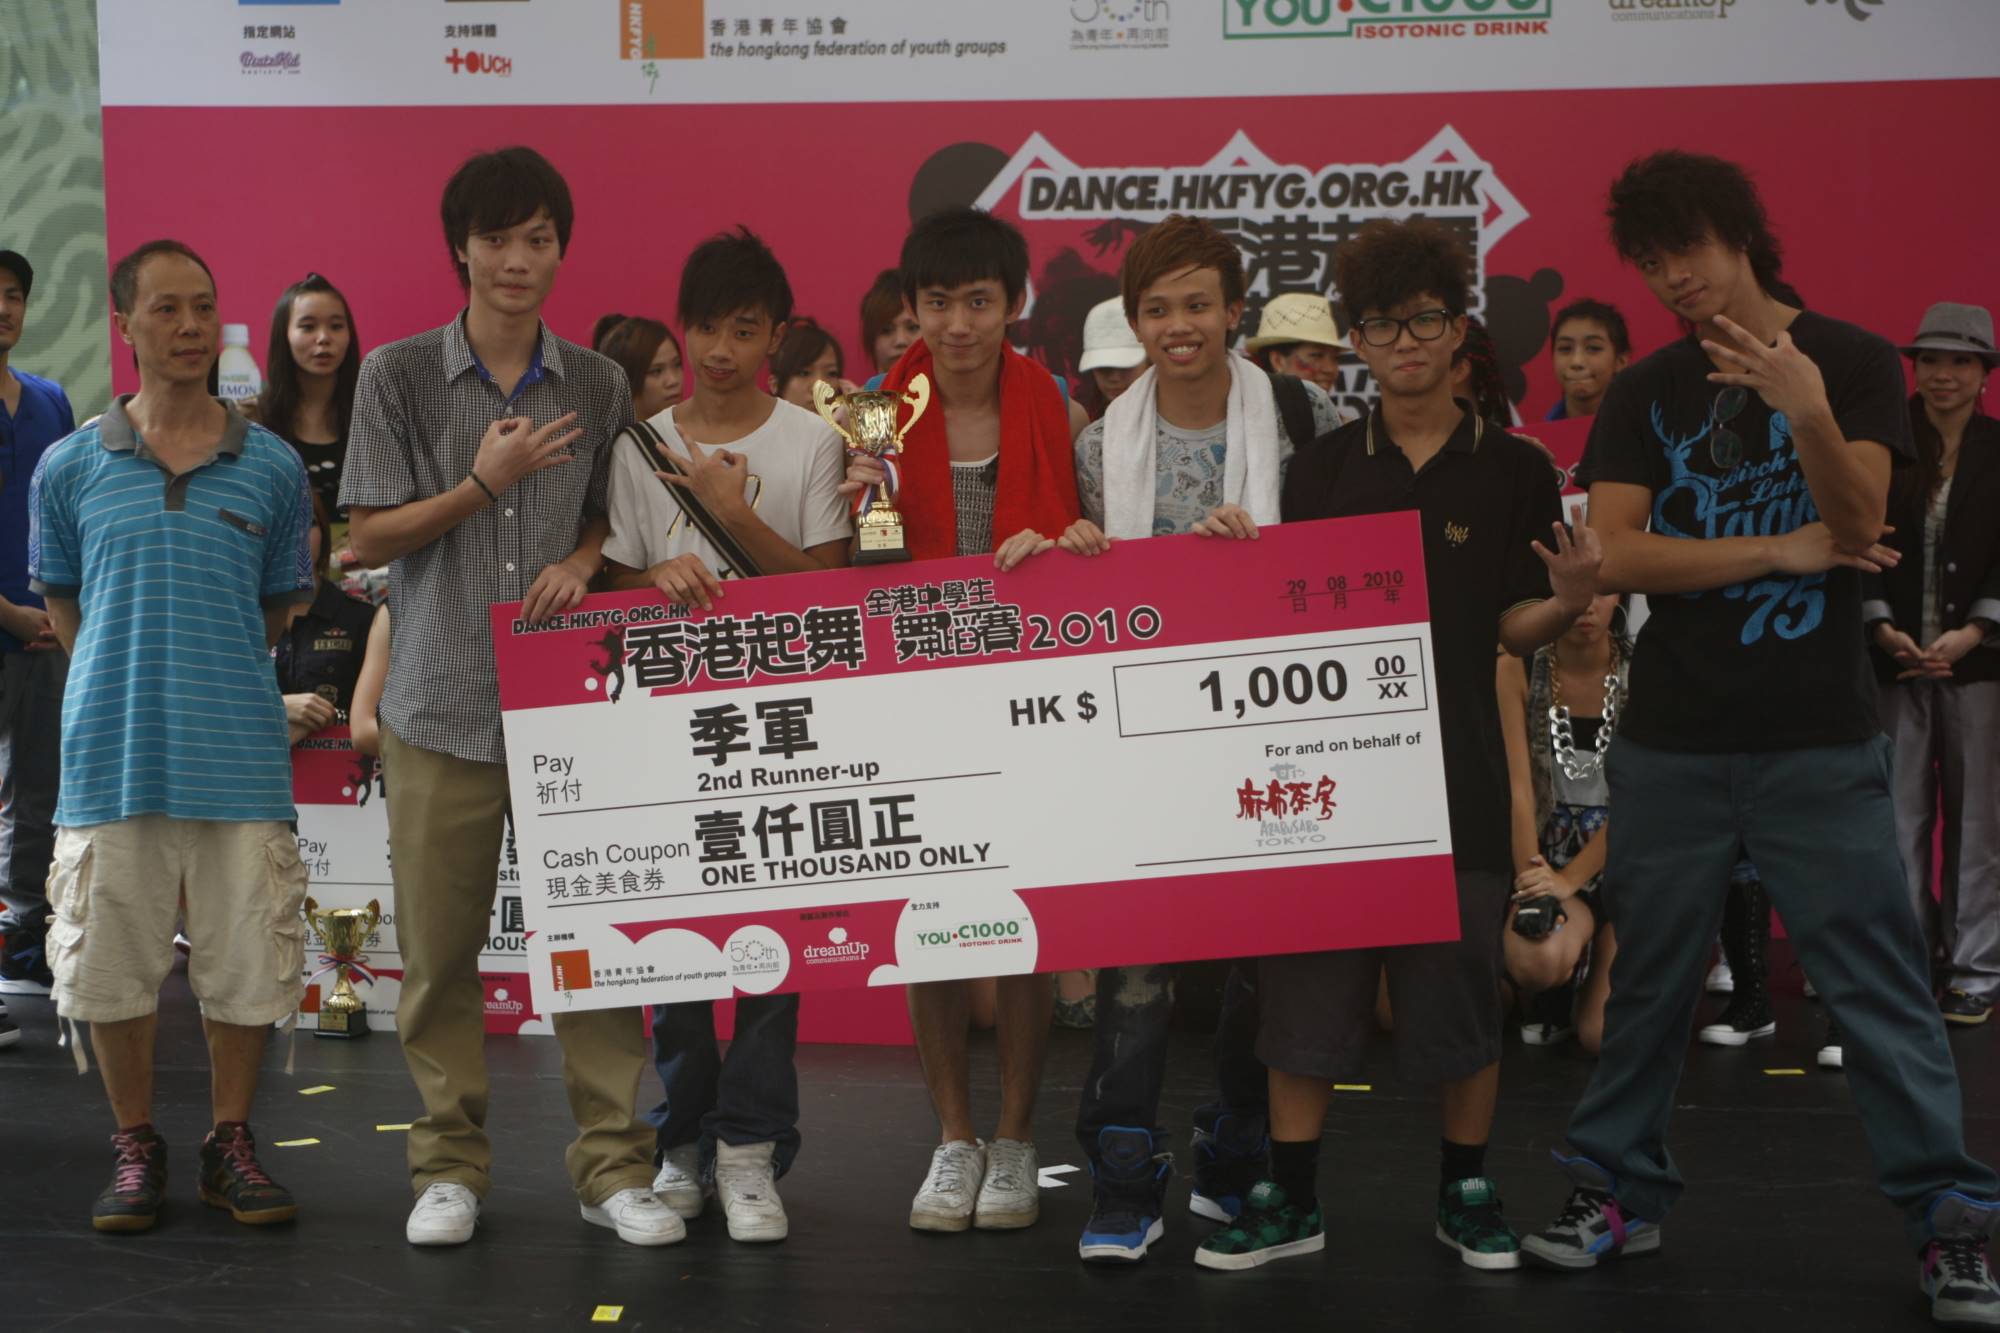 全港中學生舞蹈賽2010得獎隊伍 (3)